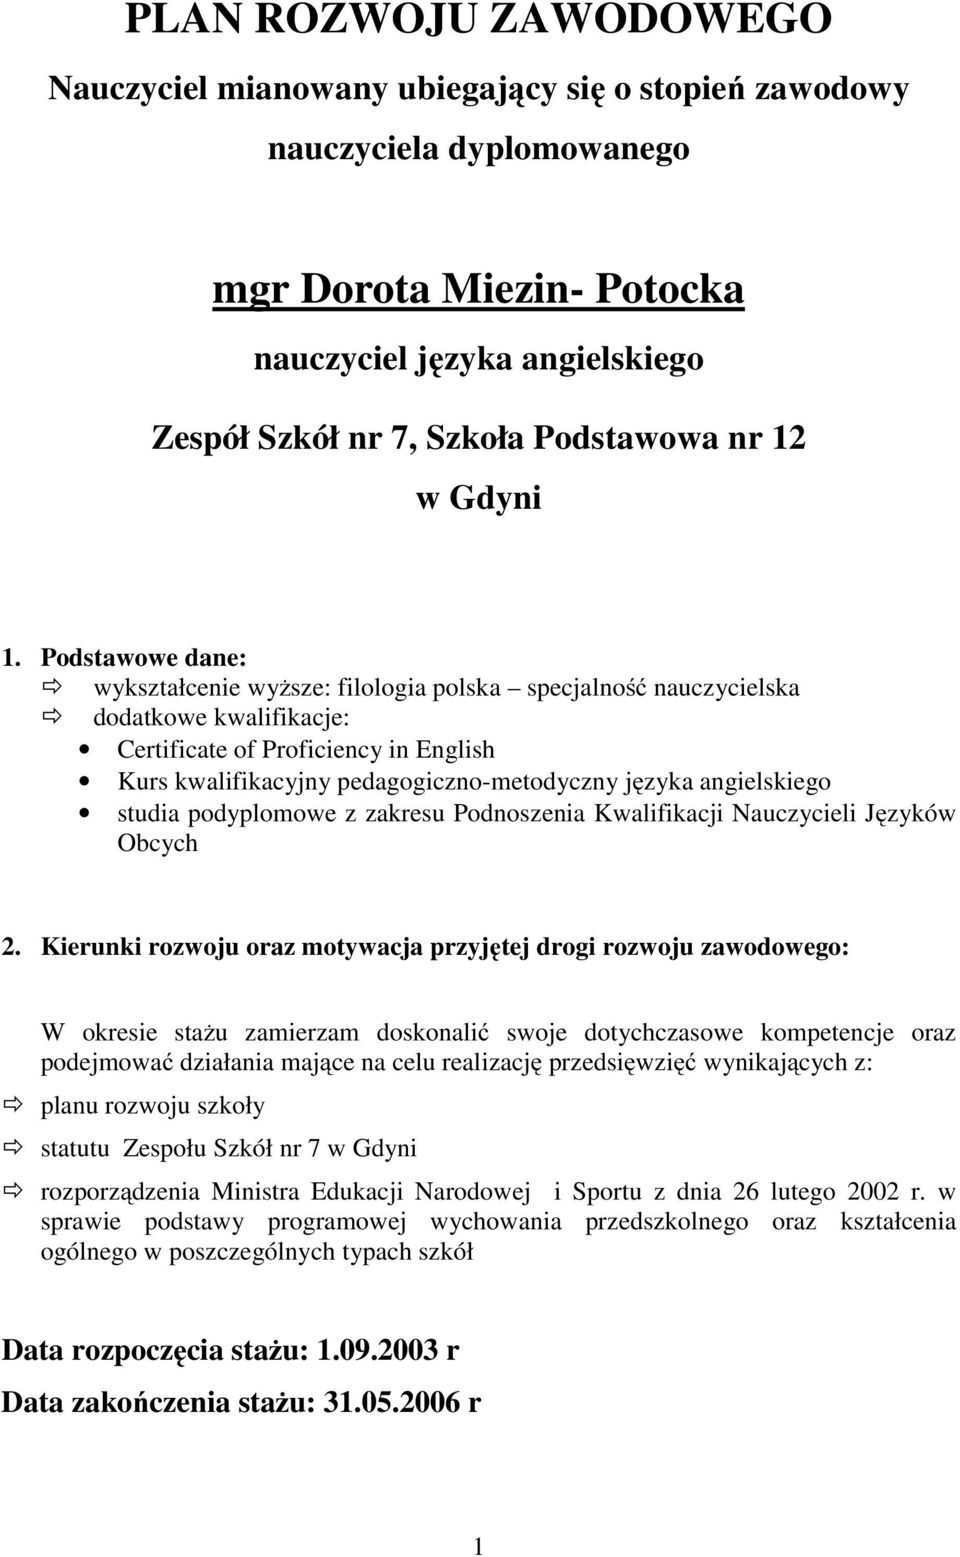 Podstawowe dane: wykształcenie wyższe: filologia polska specjalność nauczycielska dodatkowe kwalifikacje: Certificate of Proficiency in English Kurs kwalifikacyjny pedagogiczno-metodyczny języka